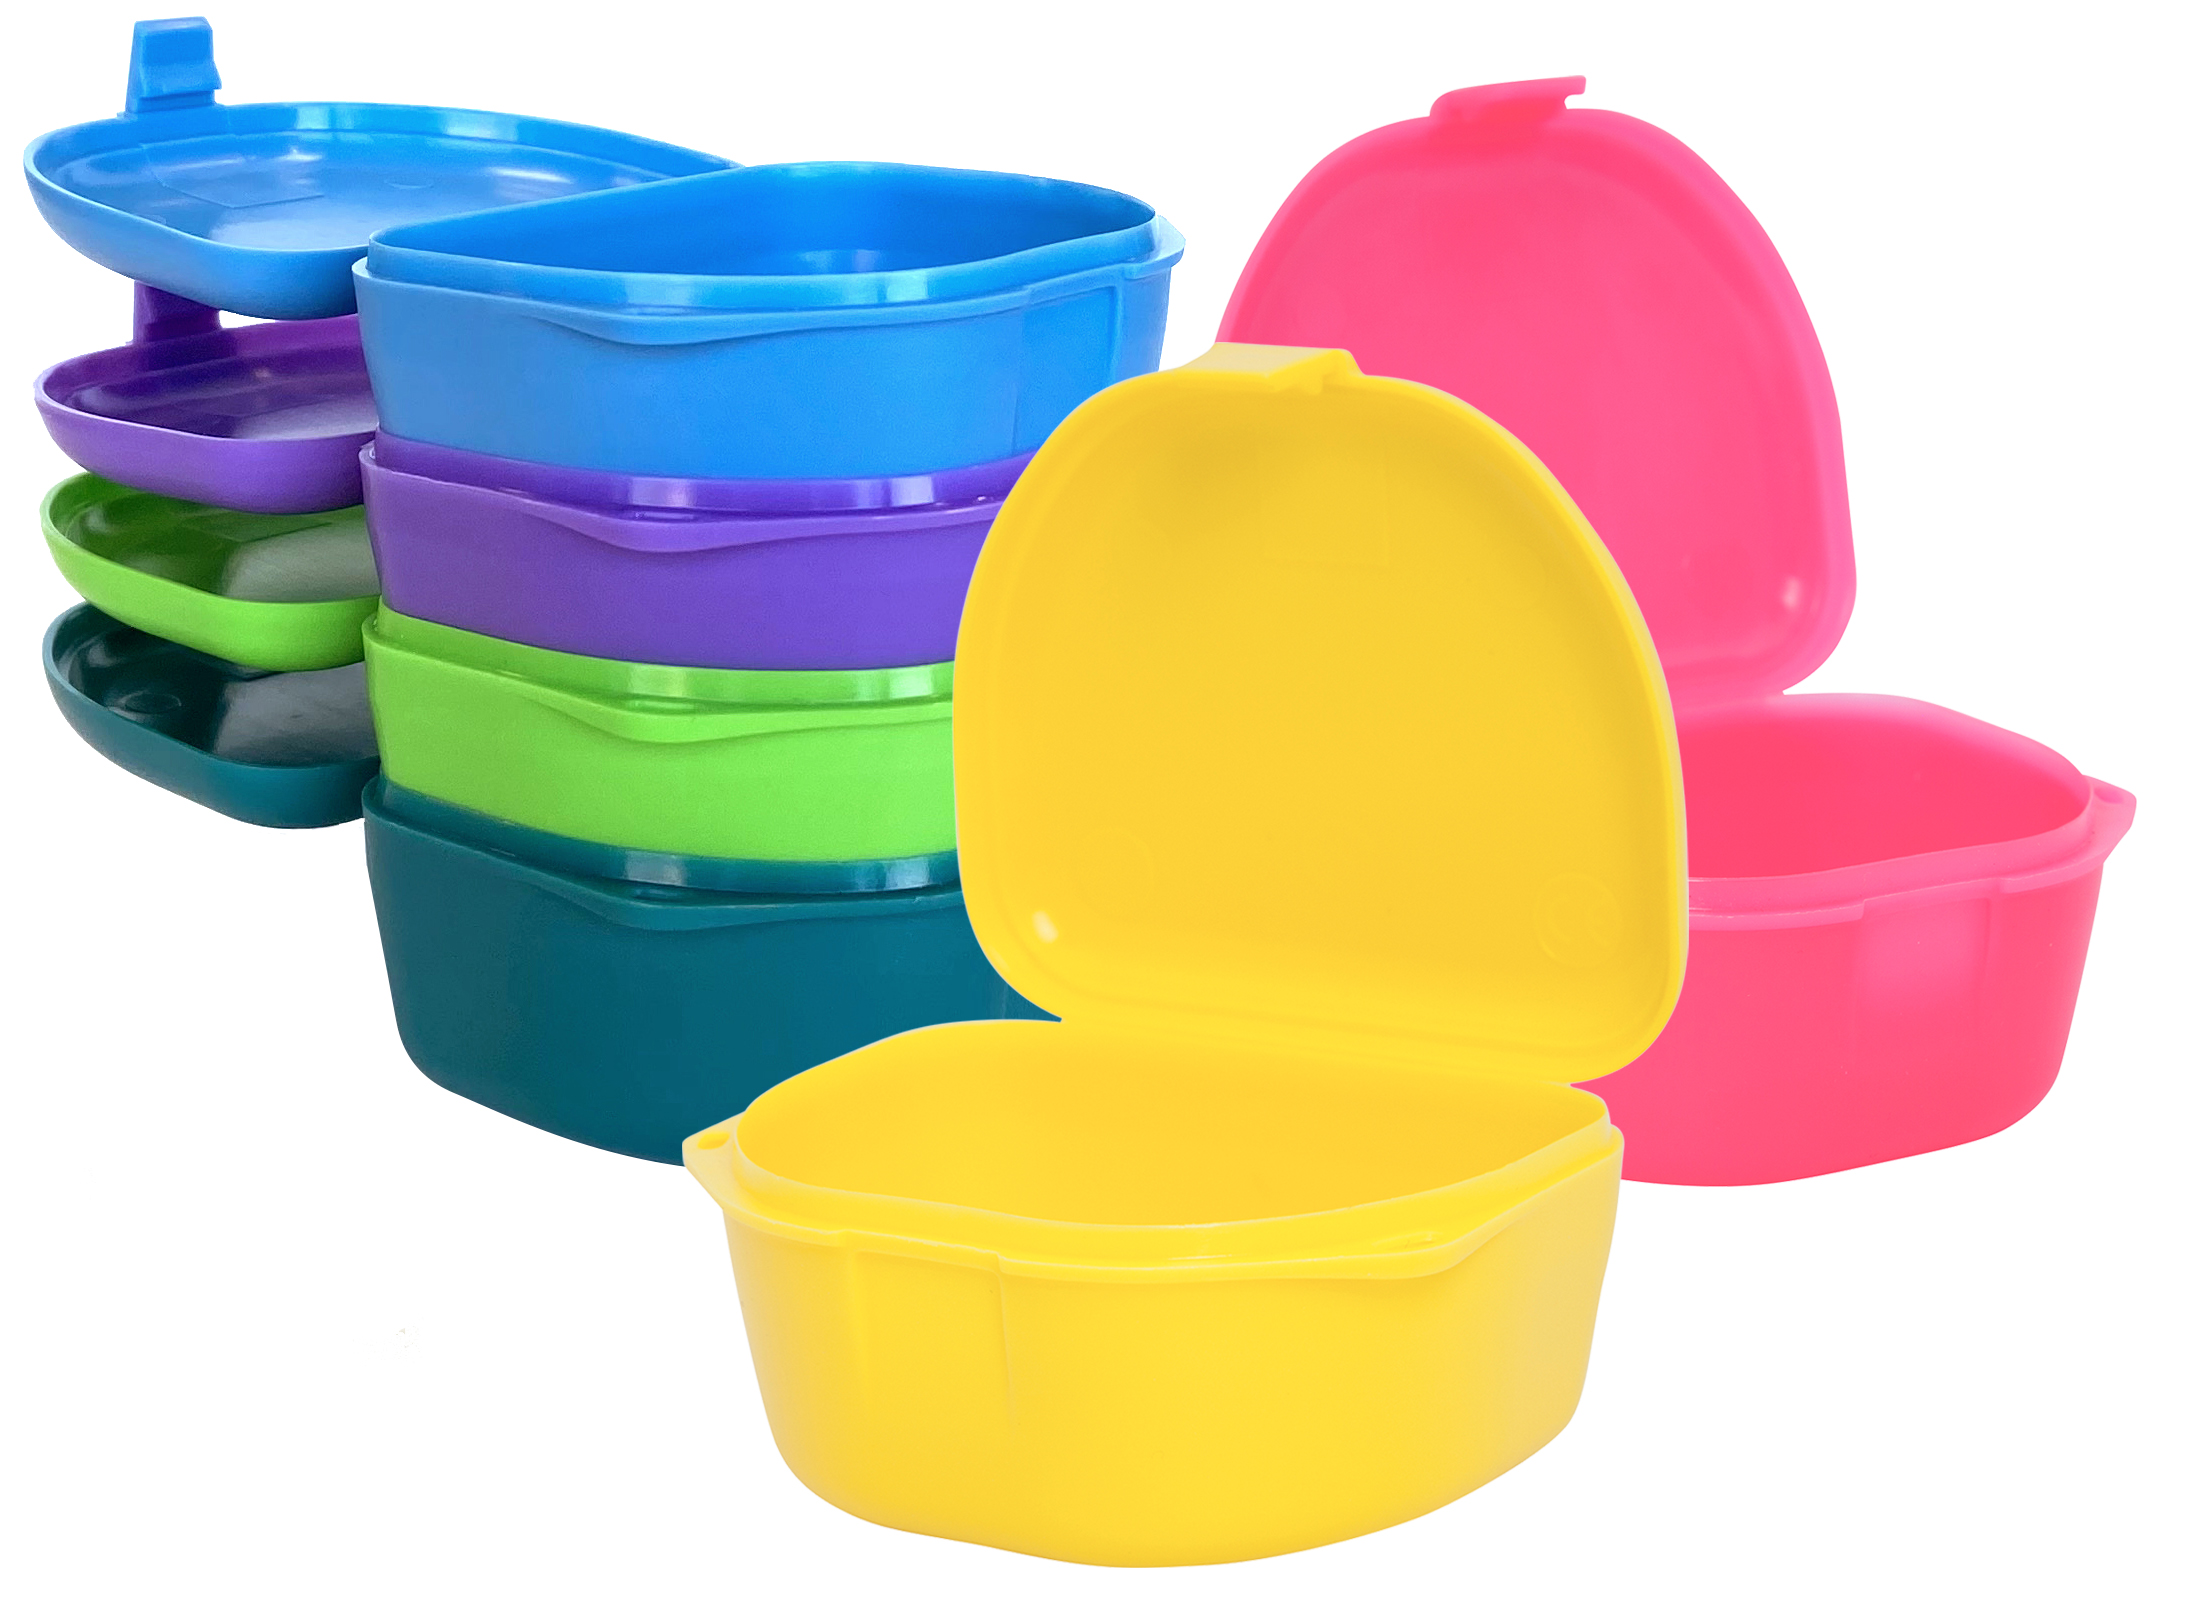 Zirc - Retainer Box 1-1/2 Deep Assorted Colors (12pk) - Dental Fix Shop